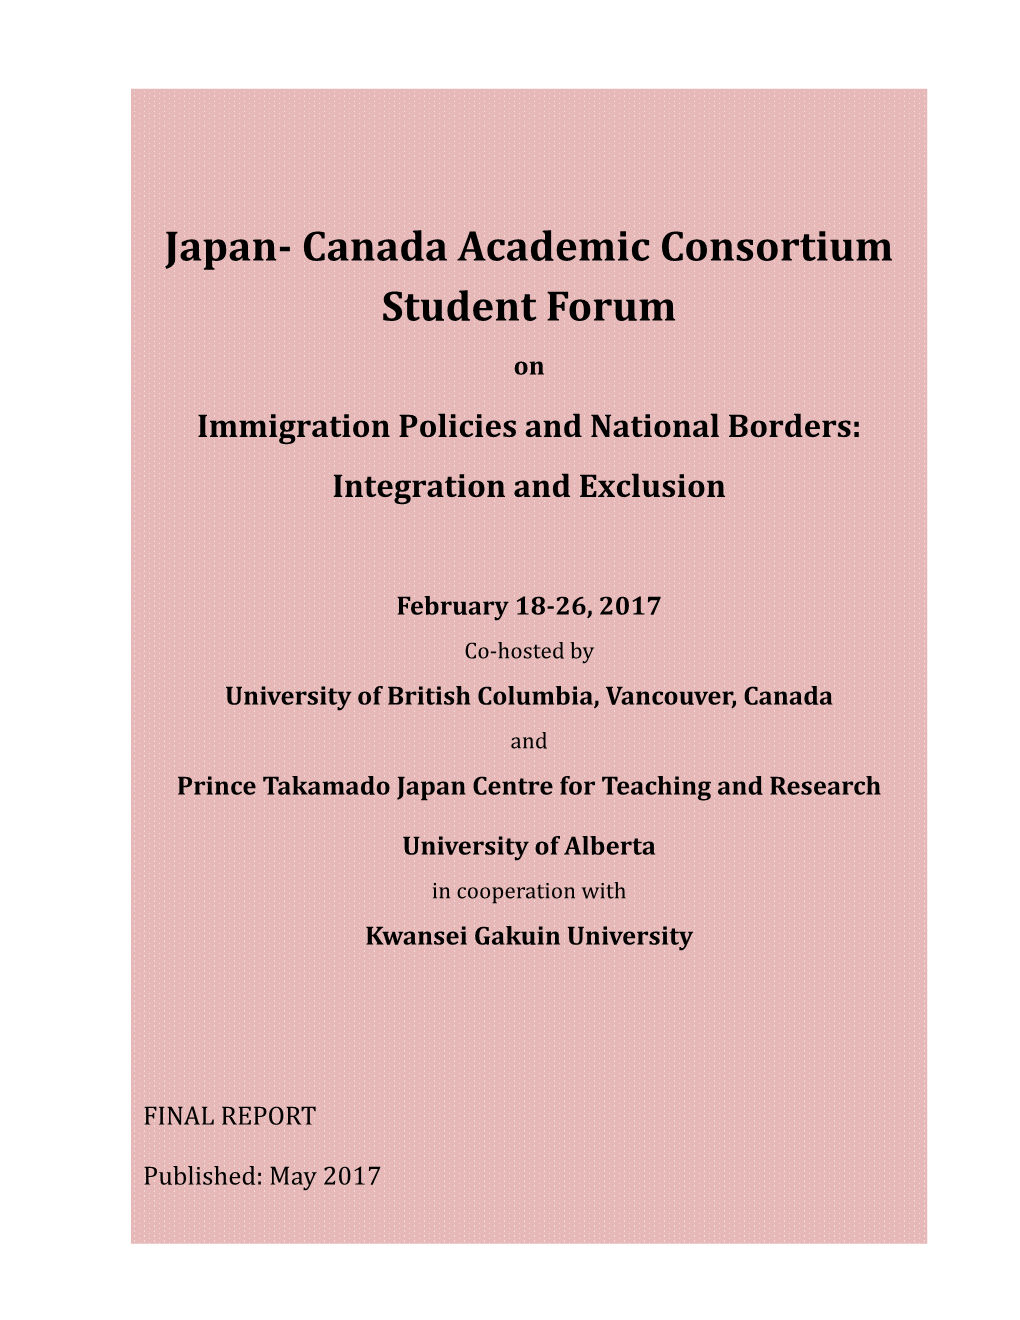 Japan- Canada Academic Consortium Student Forum